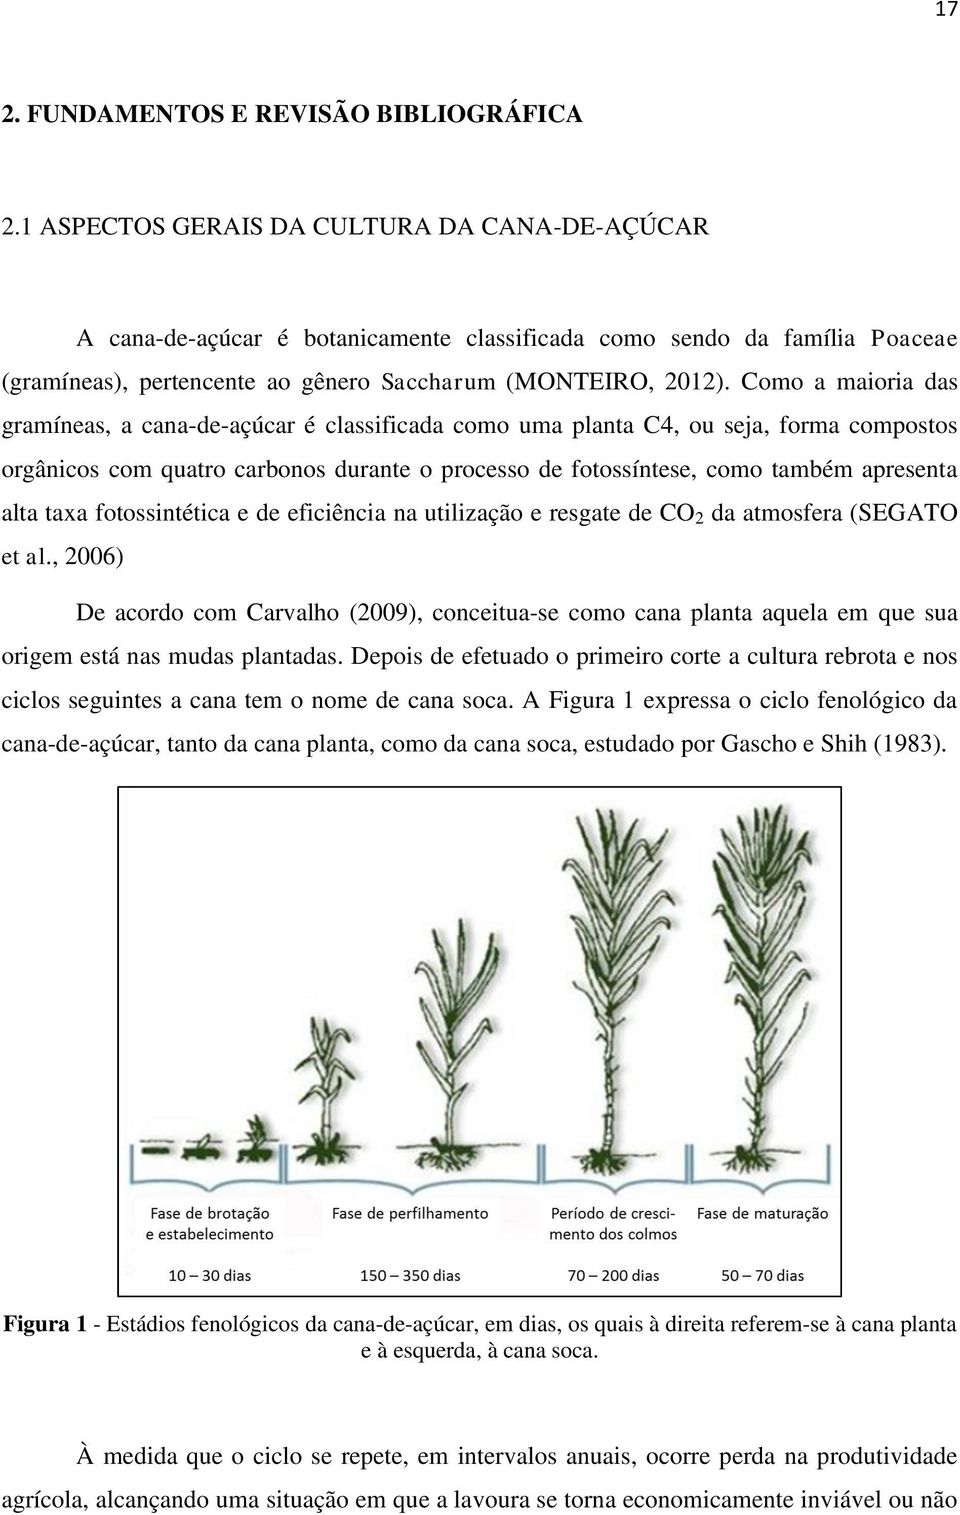 Como a maioria das gramíneas, a cana-de-açúcar é classificada como uma planta C4, ou seja, forma compostos orgânicos com quatro carbonos durante o processo de fotossíntese, como também apresenta alta